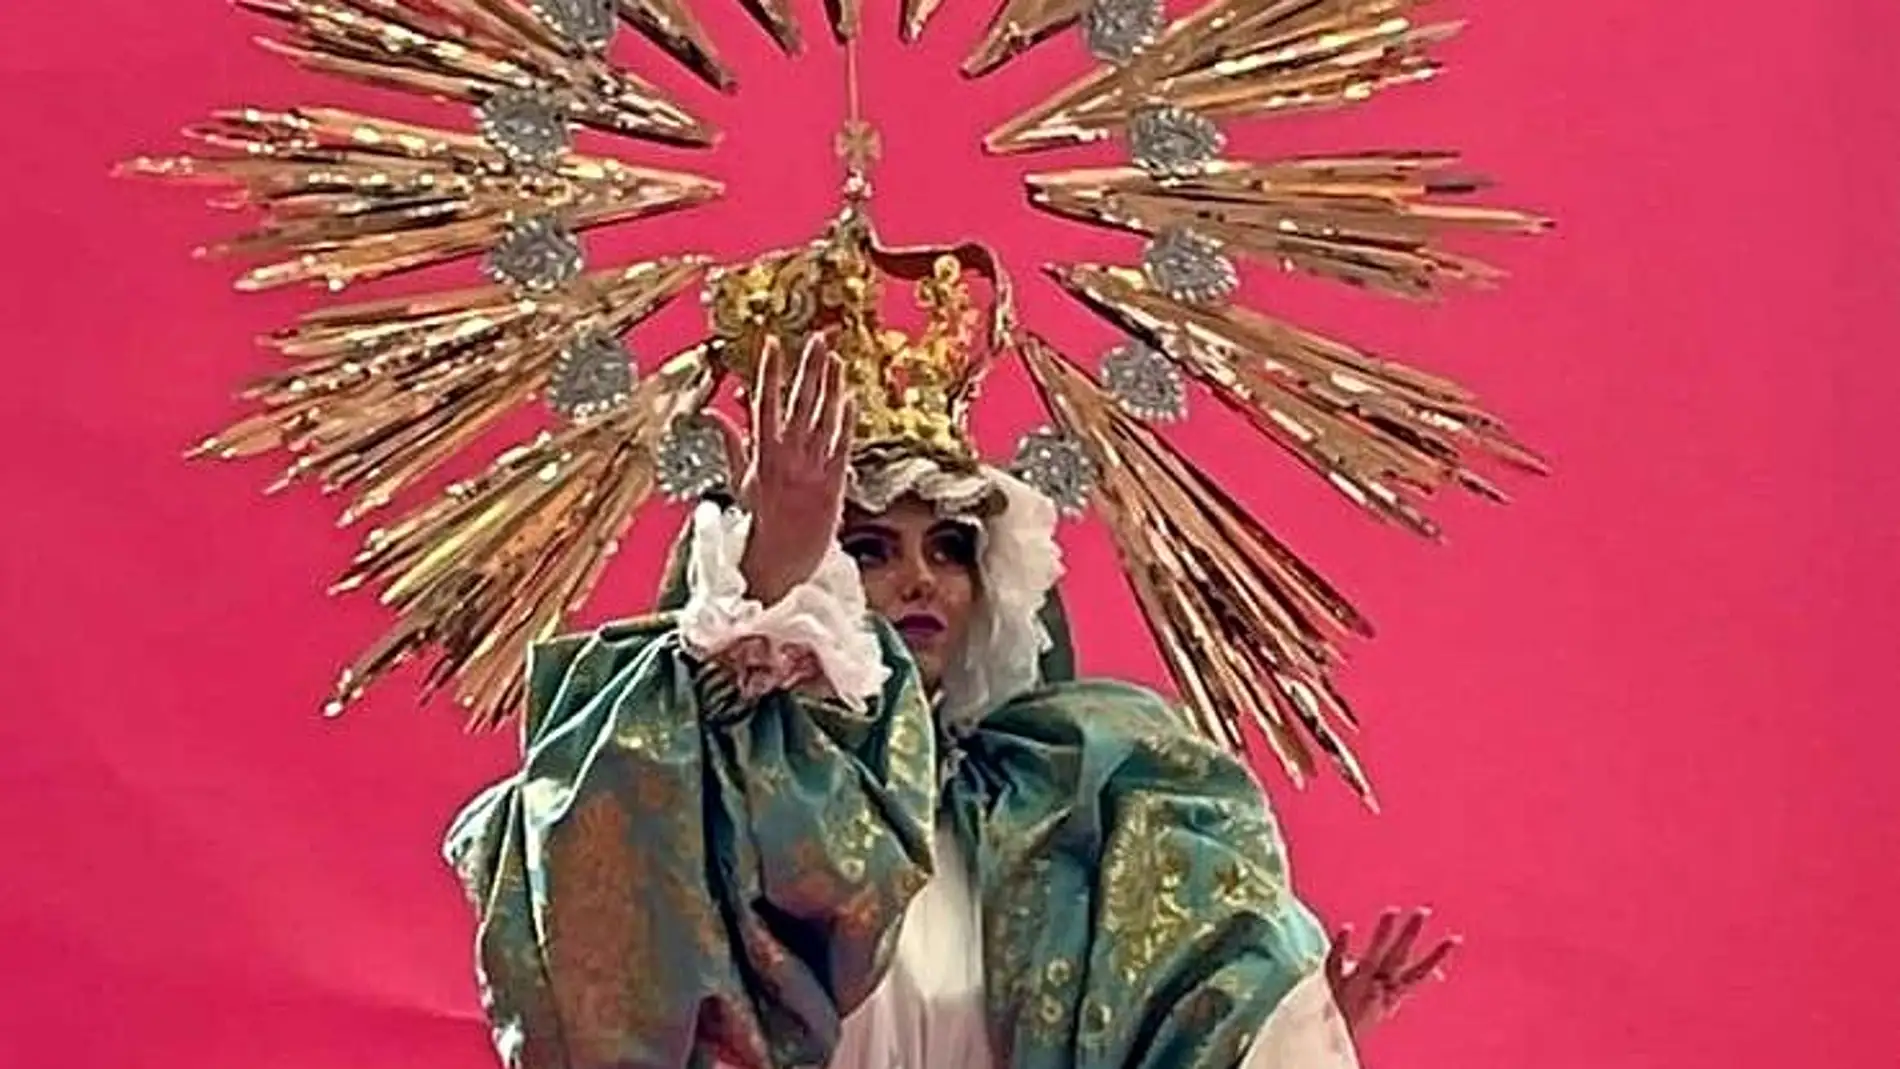 La comparsa Osadía recrea la fisonomía de una Virgen en su puesta en escena 